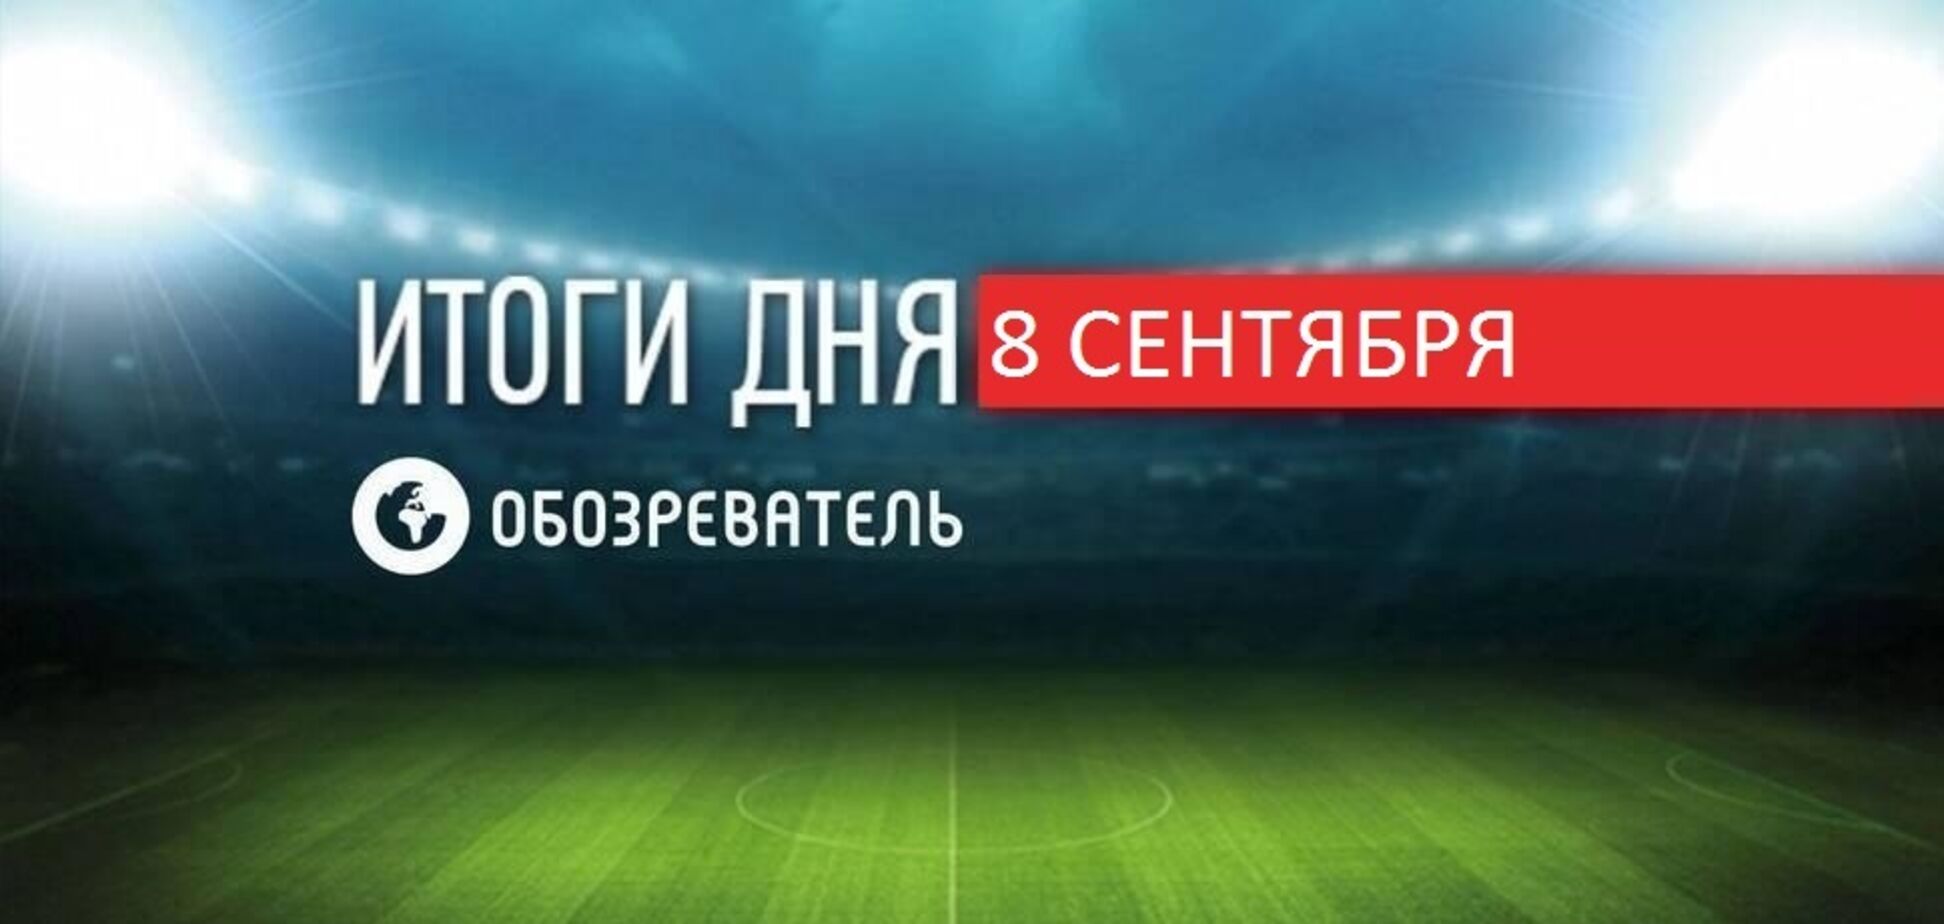 Луческу определился с балластом в 'Динамо': спортивные итоги 8 сентября